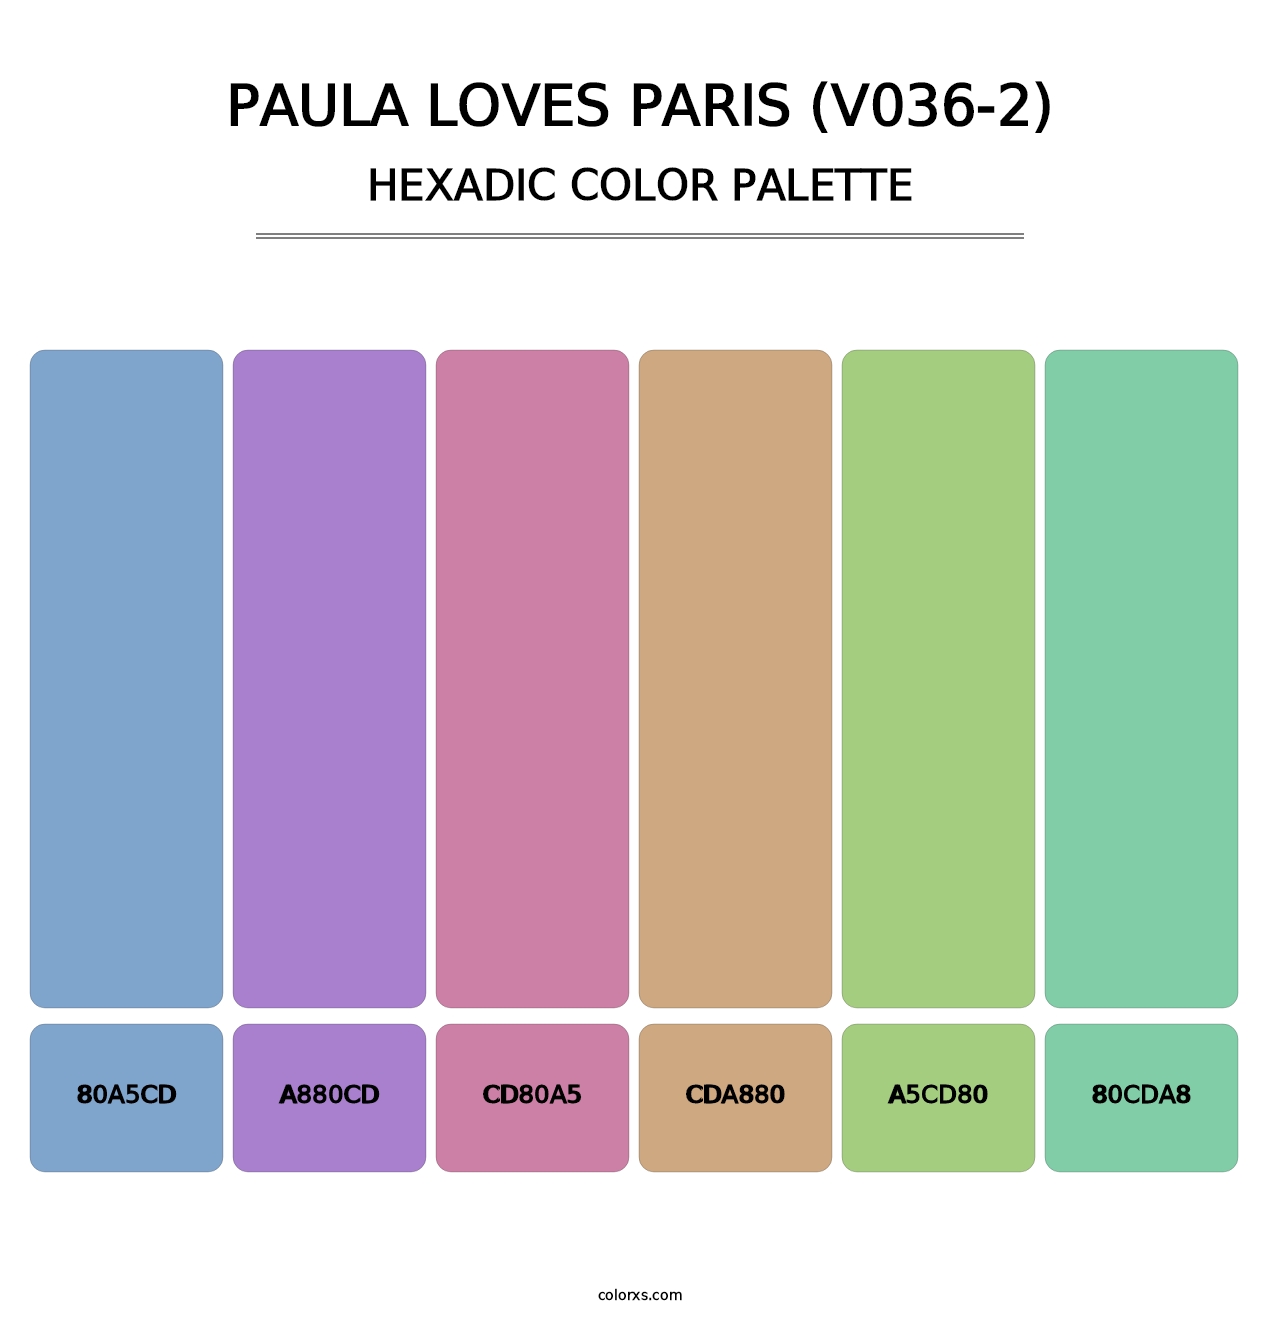 Paula Loves Paris (V036-2) - Hexadic Color Palette